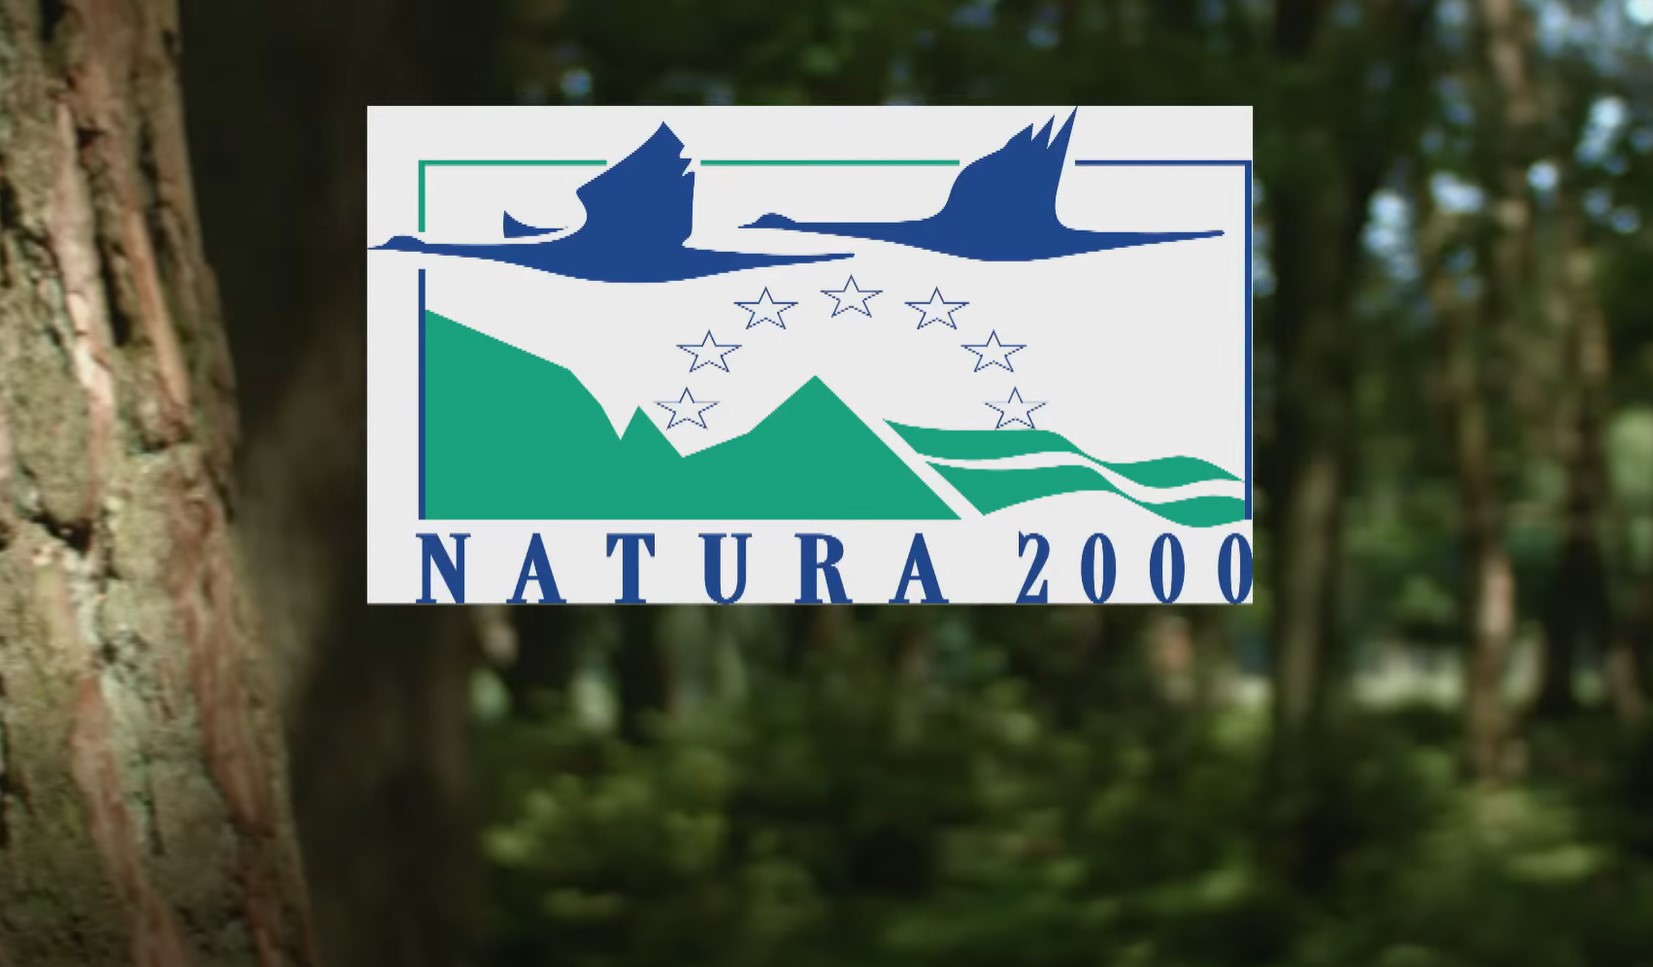 natura-2000